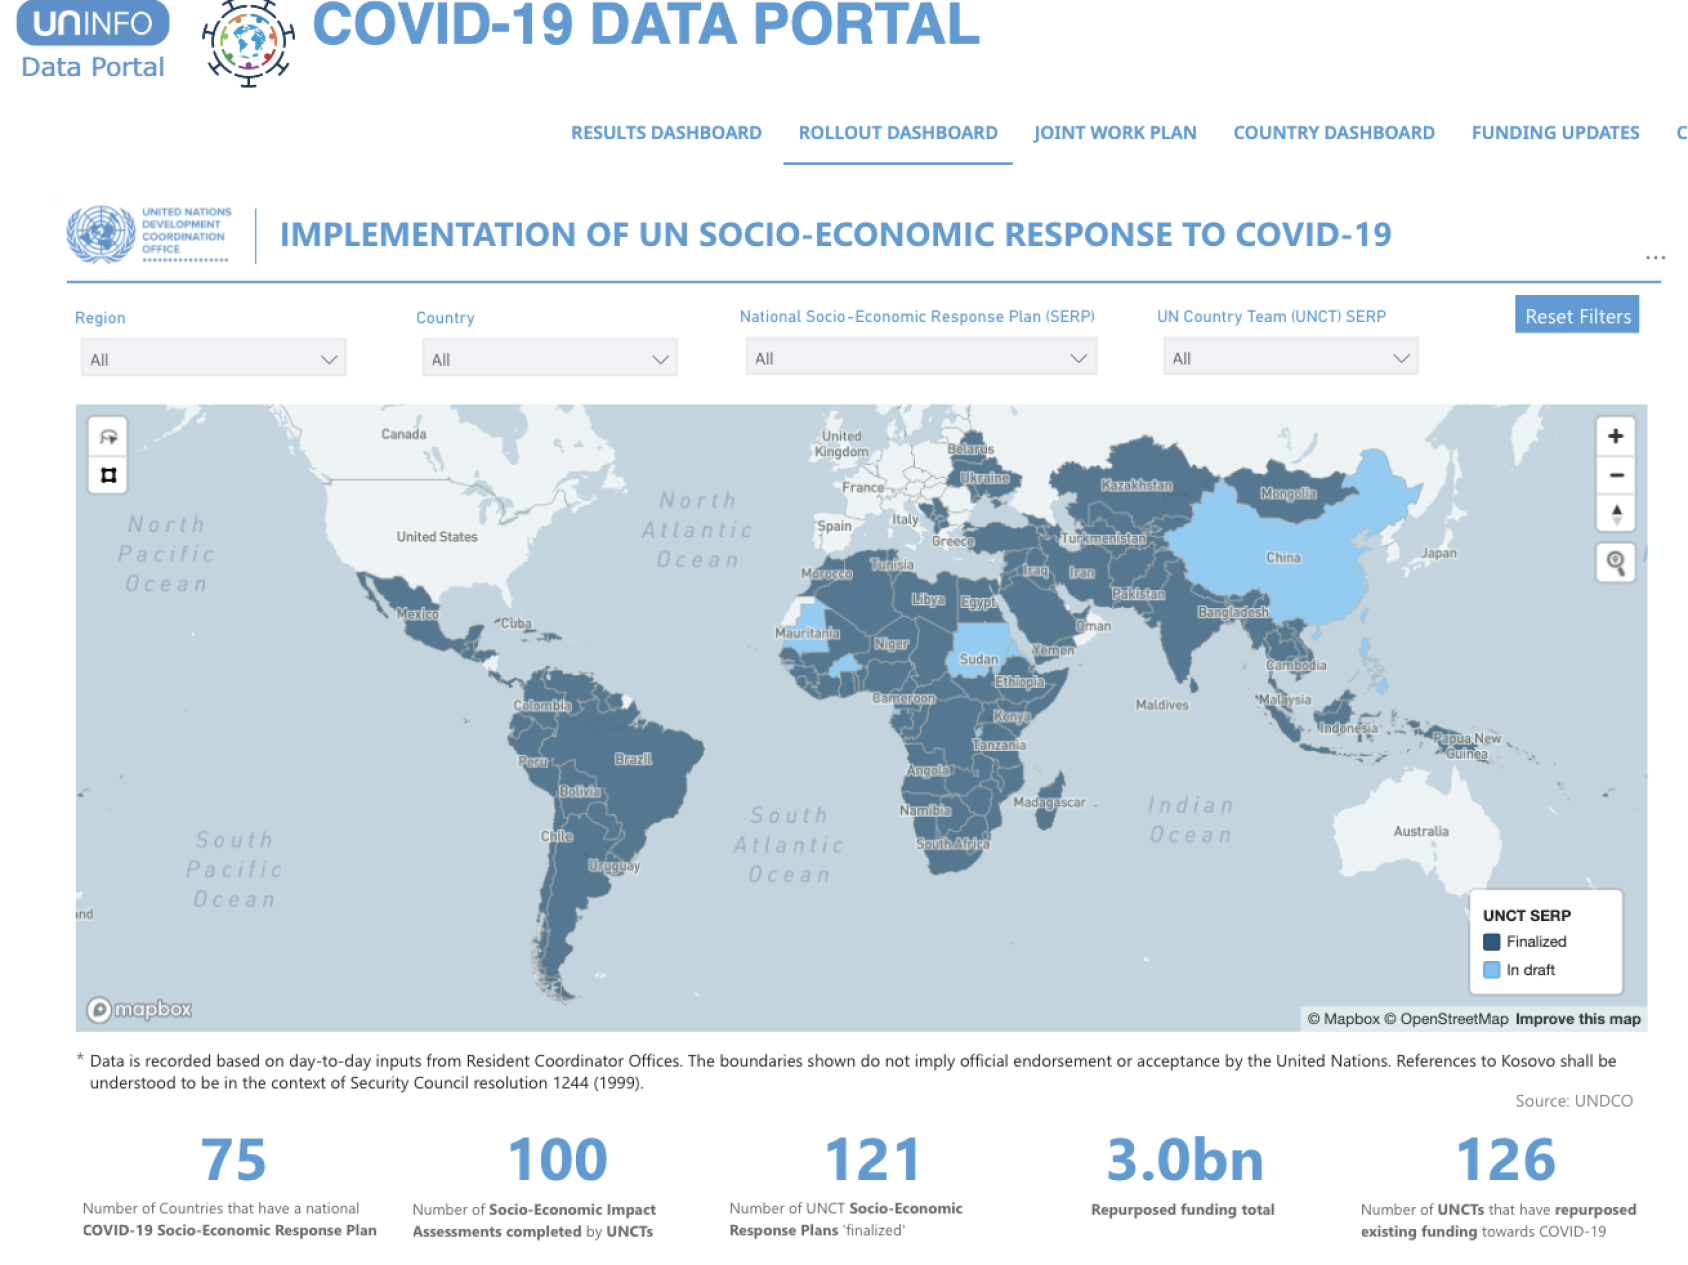 Capture d'écran du Portail de données relatives à la COVID-19. On y voit une carte du monde illustrant les interventions socio-économiques mises en oeuvre par l'ONU en réponse à la pandémie de COVID-19.